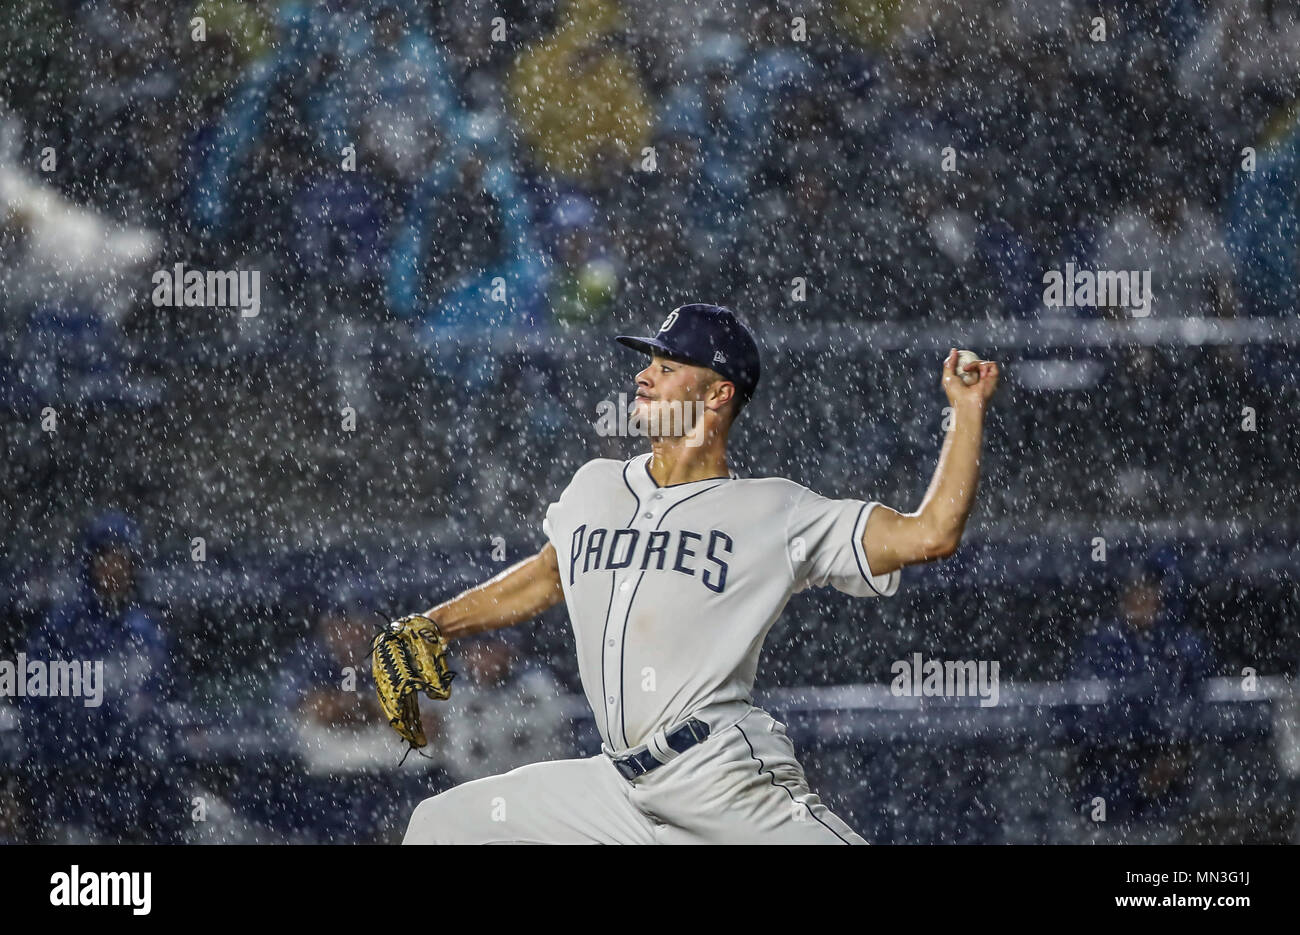 Joey Lucchesi pitcher inicial de San Diego lanza la pelota bajo la intensa lluvia, durante el partido de beisbol de los Dodgers de Los Angeles contra Padres de San Diego, durante el primer juego de la serie las Ligas Mayores del Beisbol en Monterrey, Mexico el 4 de Mayo 2018. (Photo: Luis Gutierrez) Stock Photo